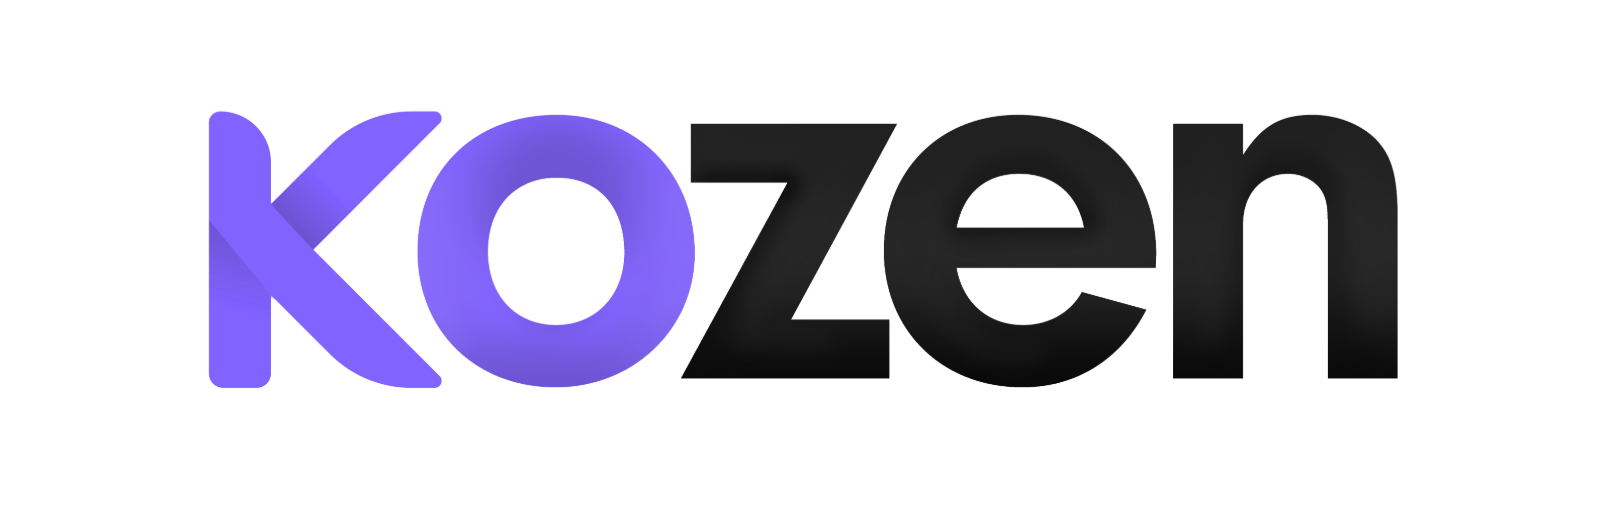 Kozen new logo